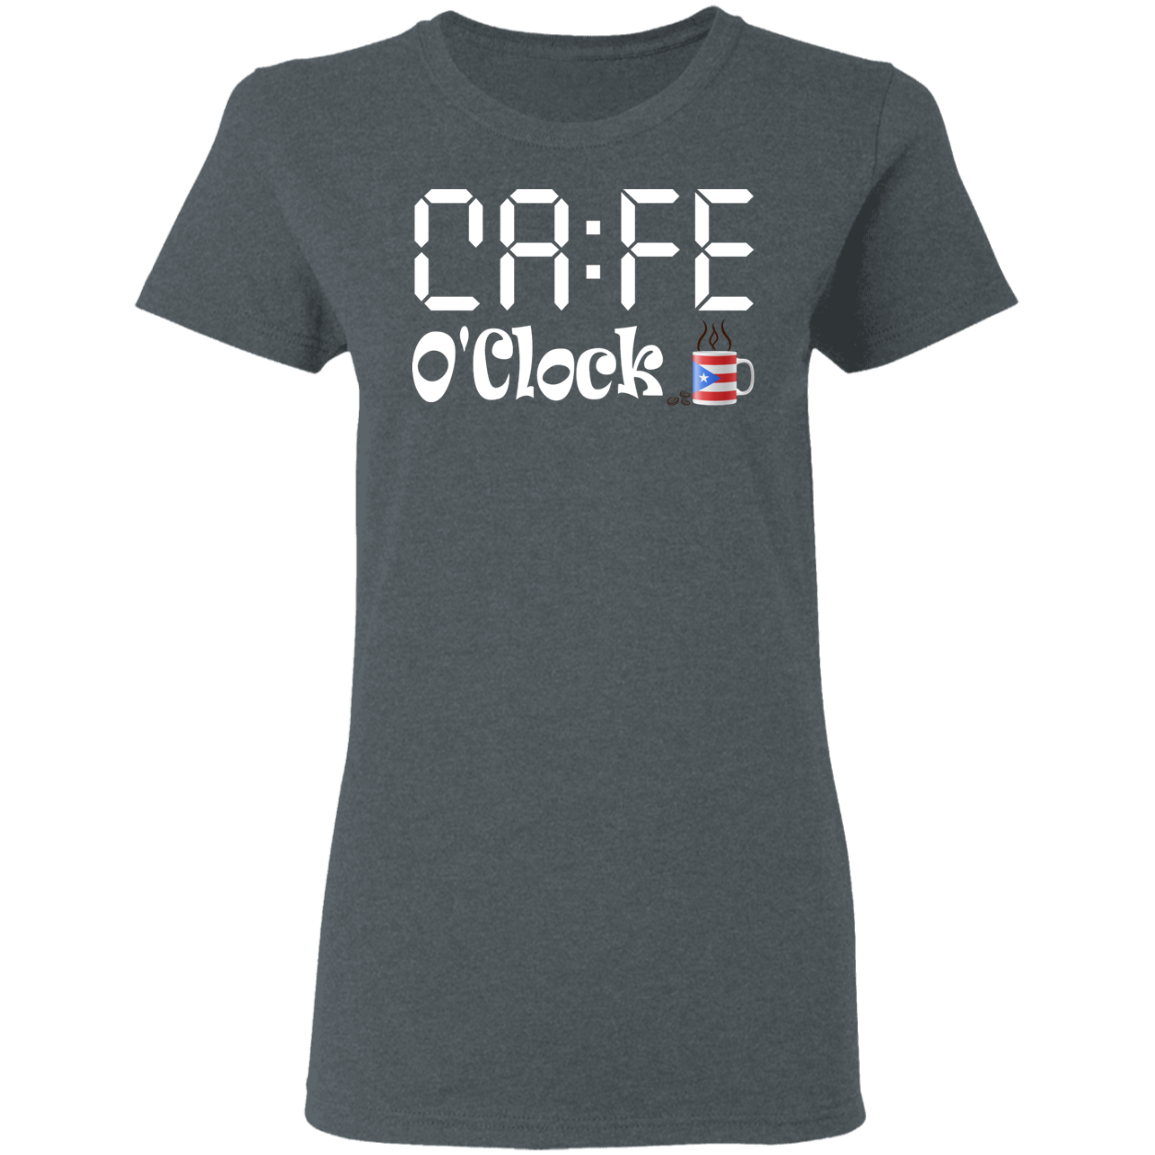 Cafe O'Clock 5.3 oz. T-Shirt